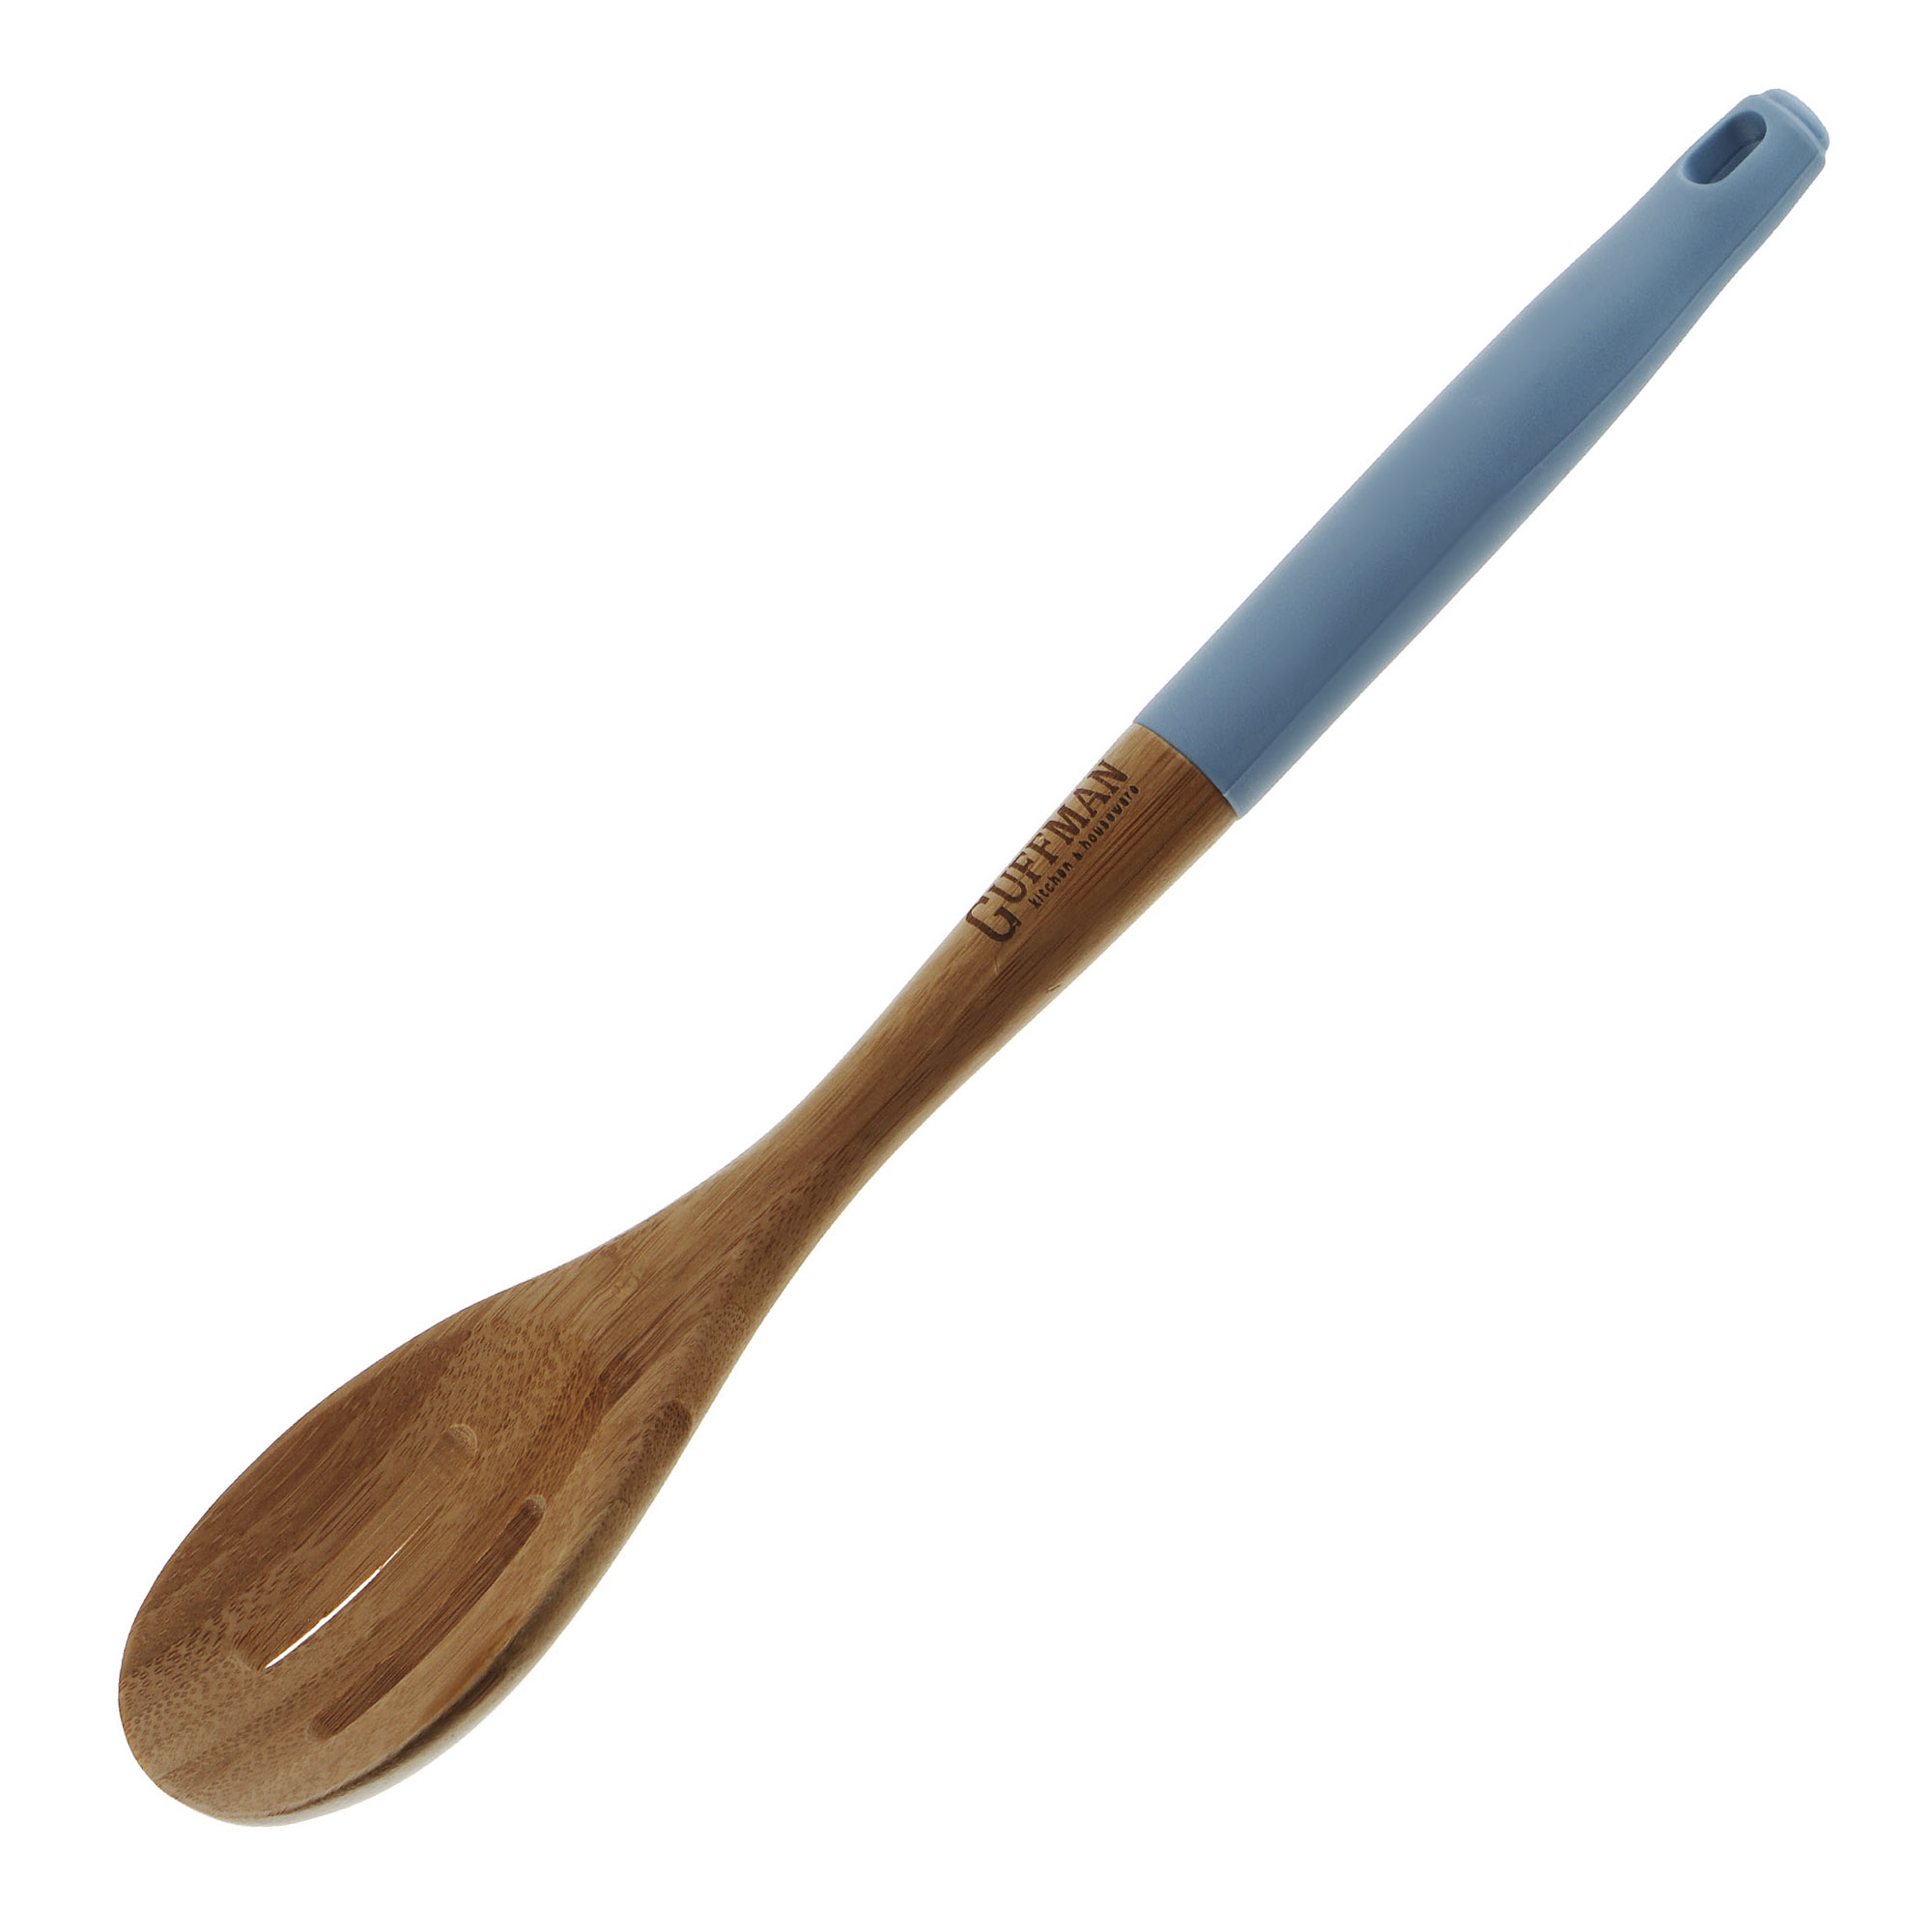 Ложка бамбуковая Guffman с прорезями 36 см голубая ложка бамбуковая guffman с прорезями 36 см голубая